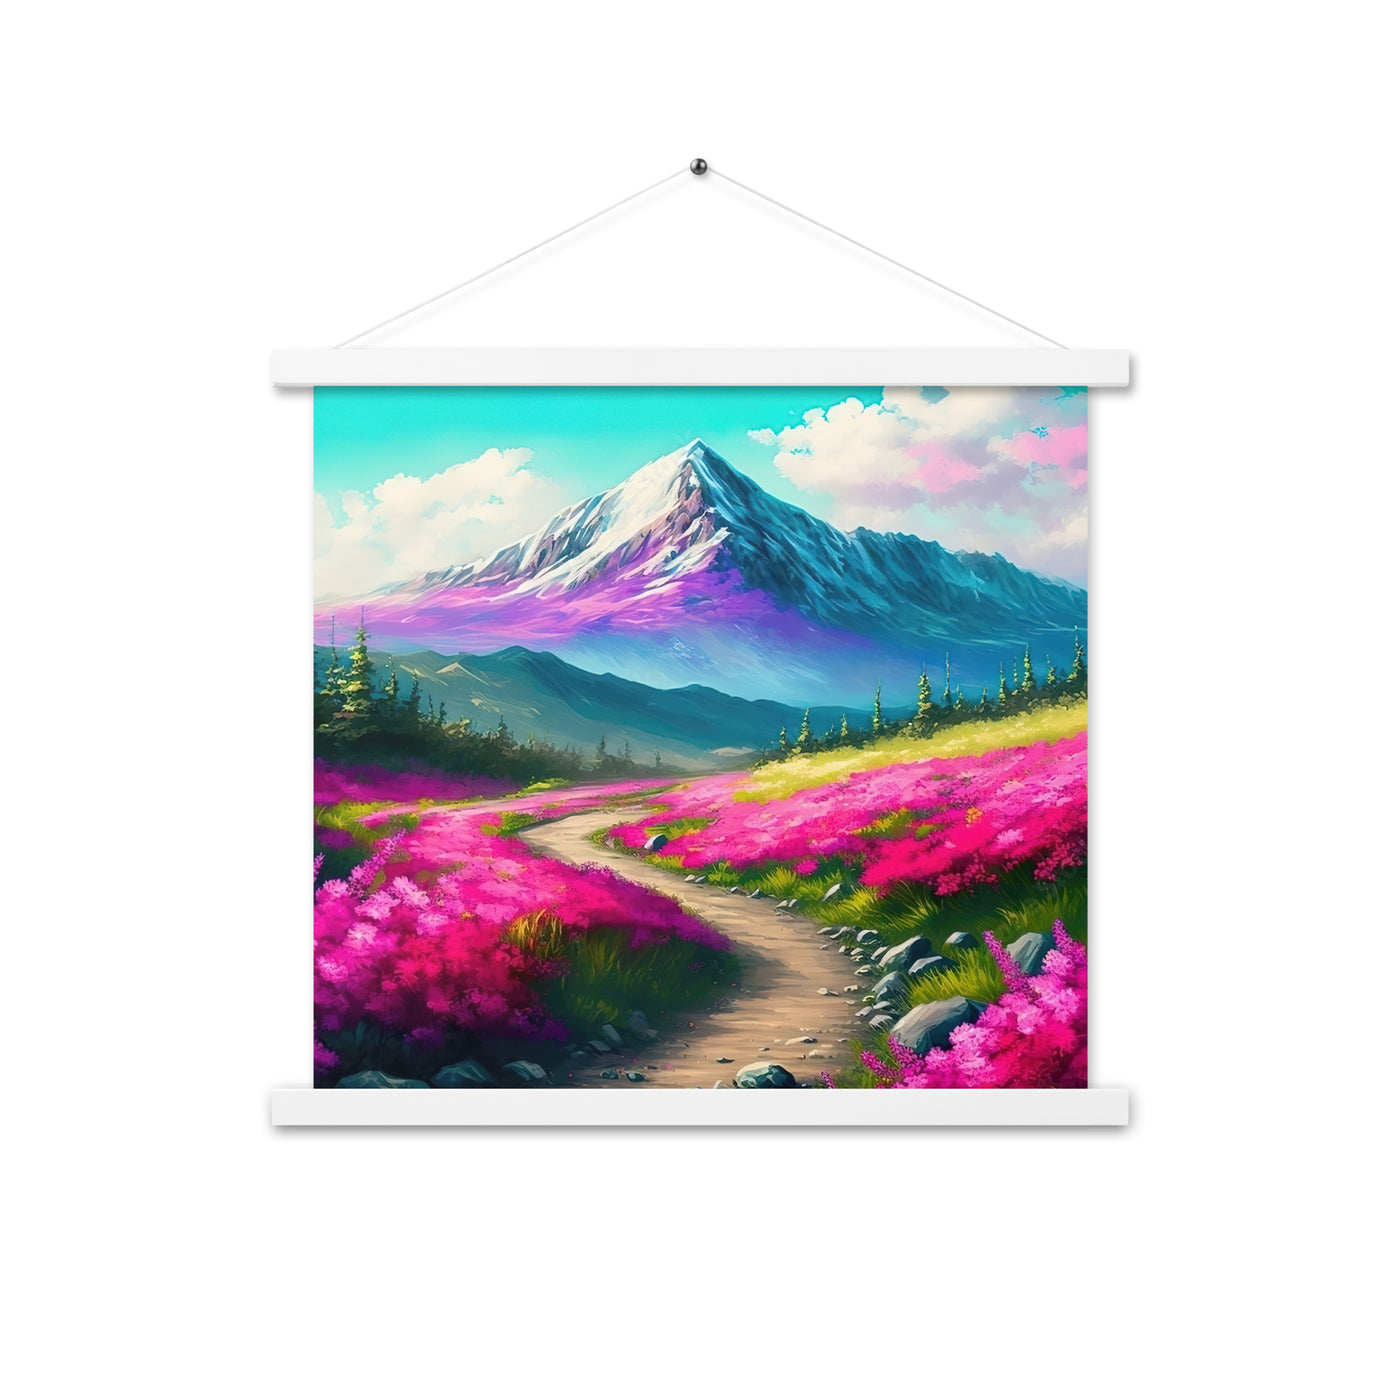 Berg, pinke Blumen und Wanderweg - Landschaftsmalerei - Premium Poster mit Aufhängung berge xxx 45.7 x 45.7 cm